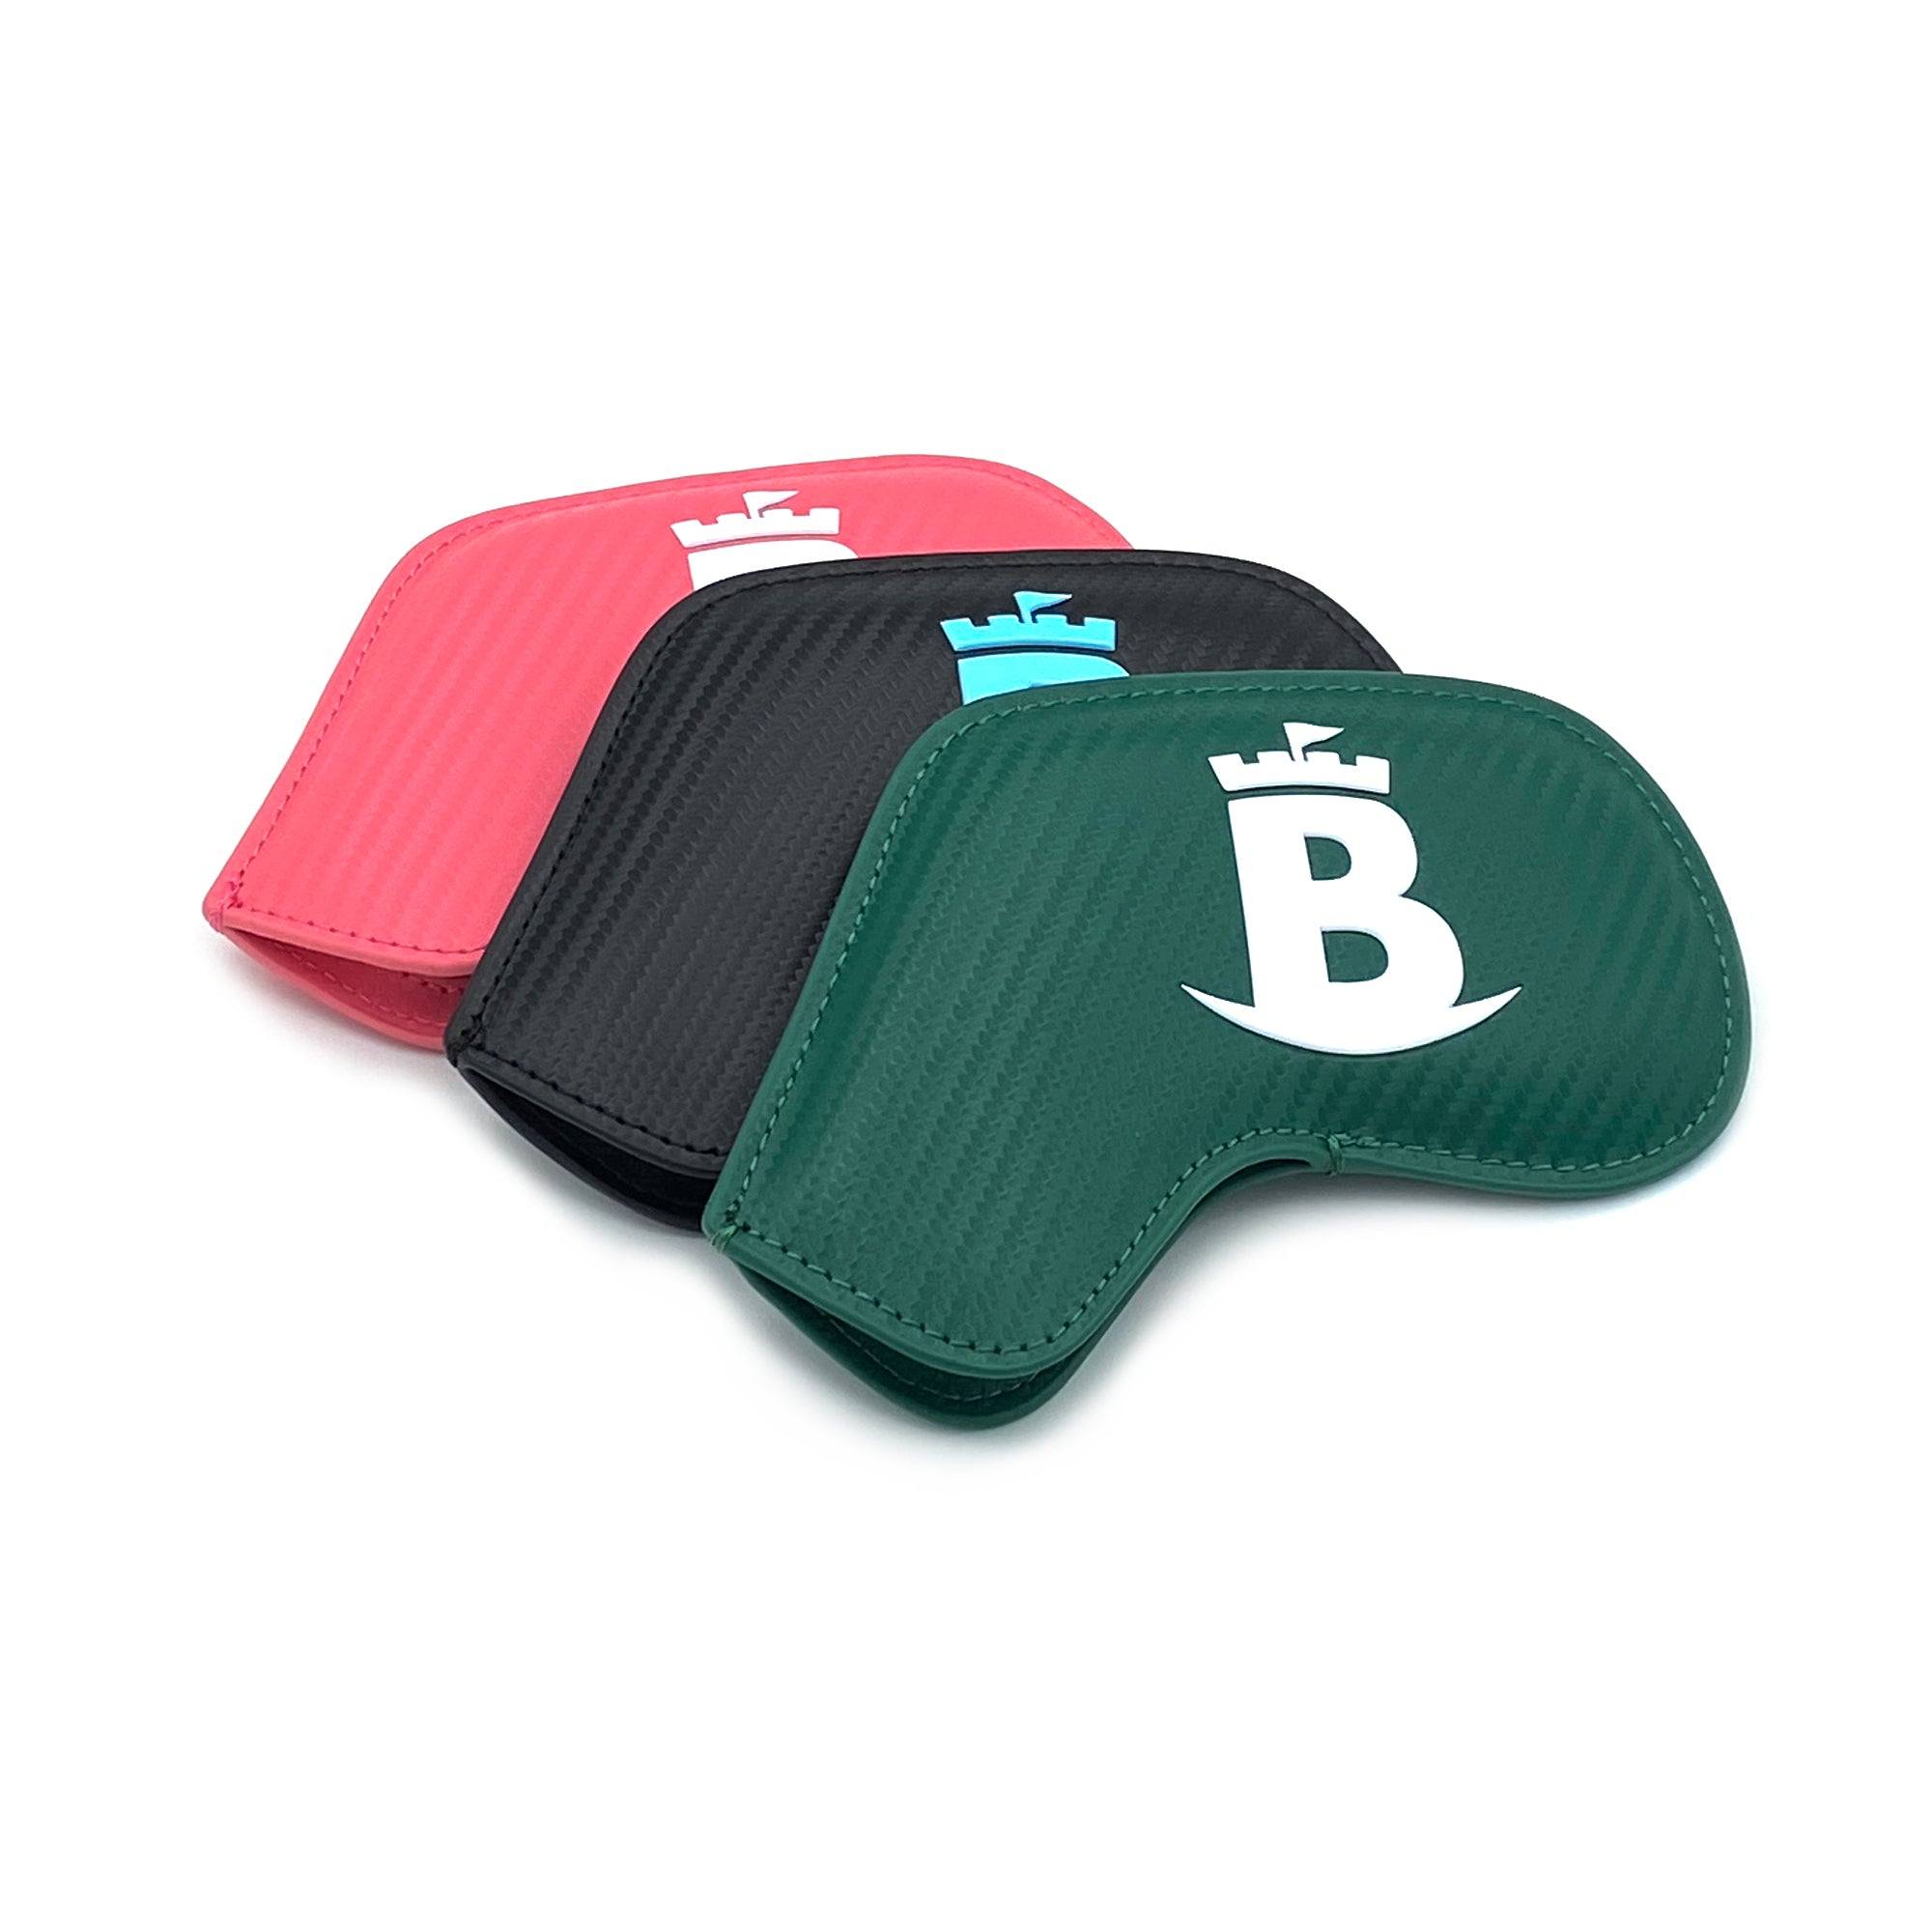 Baron Meraki Edition Iron Headcover MIXED COLOR (Black, Green, Pink)